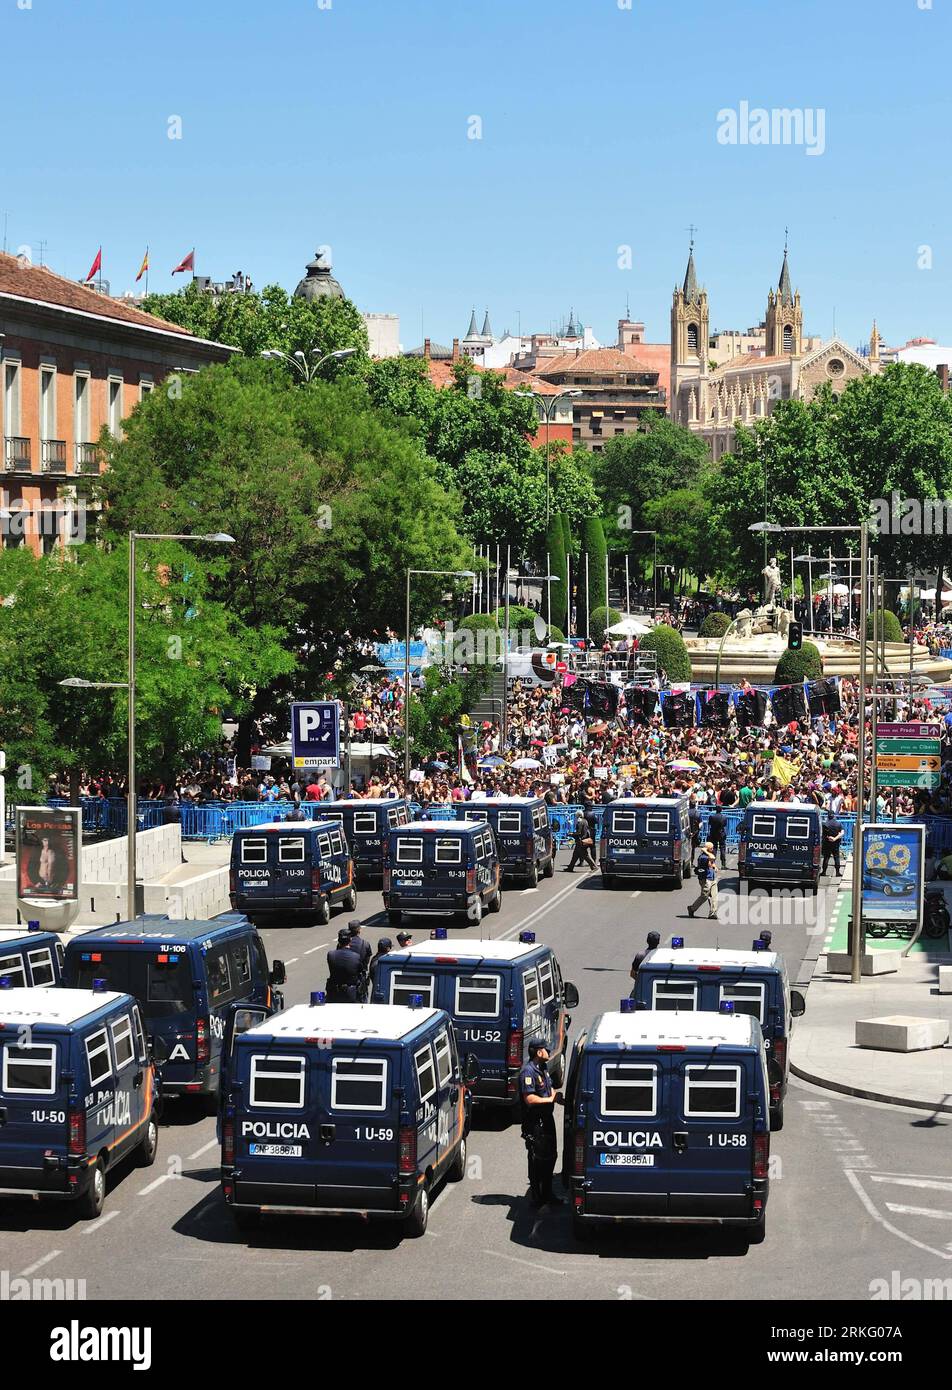 Bildnummer: 55507281 Datum: 19.06.2011 Copyright: Imago/Xinhua (110619) -- MADRID, 19 de junio de 2011 (Xinhua) -- Los manifestantes se enfrentan a policías durante una protesta masiva en Madrid, capital de España, el 19 de junio de 2011. Miles de personas se reunieron aquí el domingo para mostrar su enojo por el alto desempleo y el manejo del gobierno de las crisis económicas. (Xinhua/Chen Haitong) (wjd) ESPAÑA-MADRID-ECONOMÍA-PROTESTA PUBLICATIONxNOTxINxCHN Politik Proteste Demo Spanien xkg 2011 hoch O0 Totale Polizei Fahrzeug Polizeiauto O0 indignados, die Empörten, 15 M Bildnummer 55507281 Date 19 06 2011 COP Foto de stock